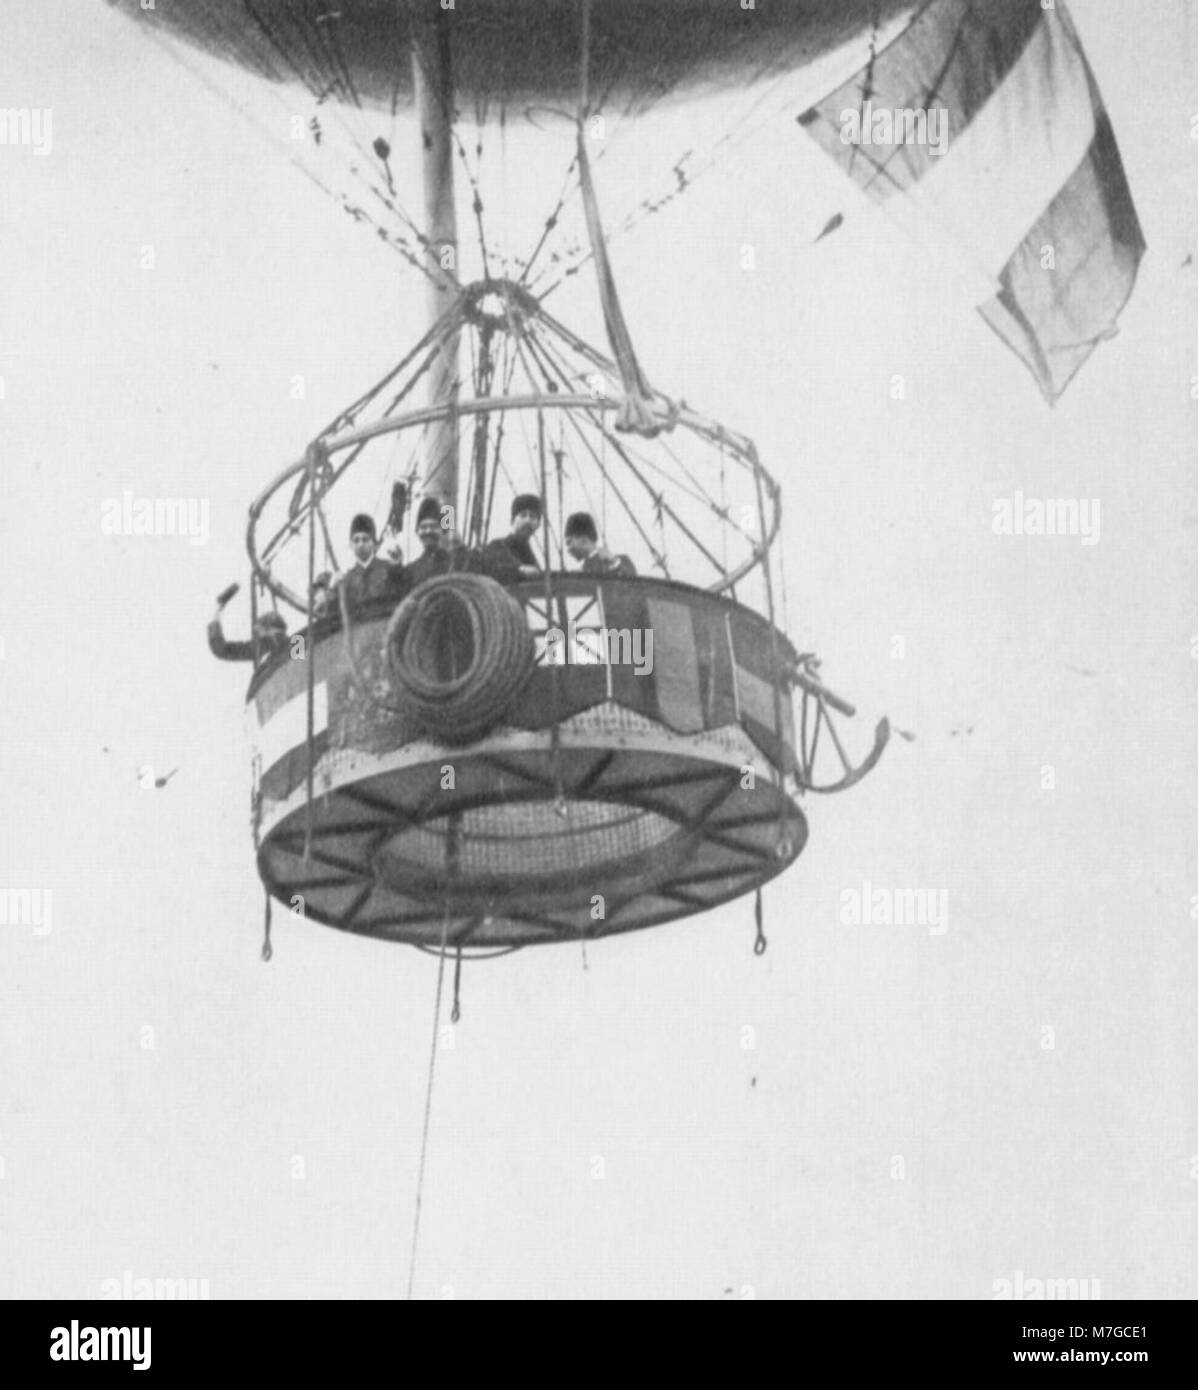 Primoli, Giuseppe-Der Abflug des Fesselballons (Zeno Fotografie) Stockfoto